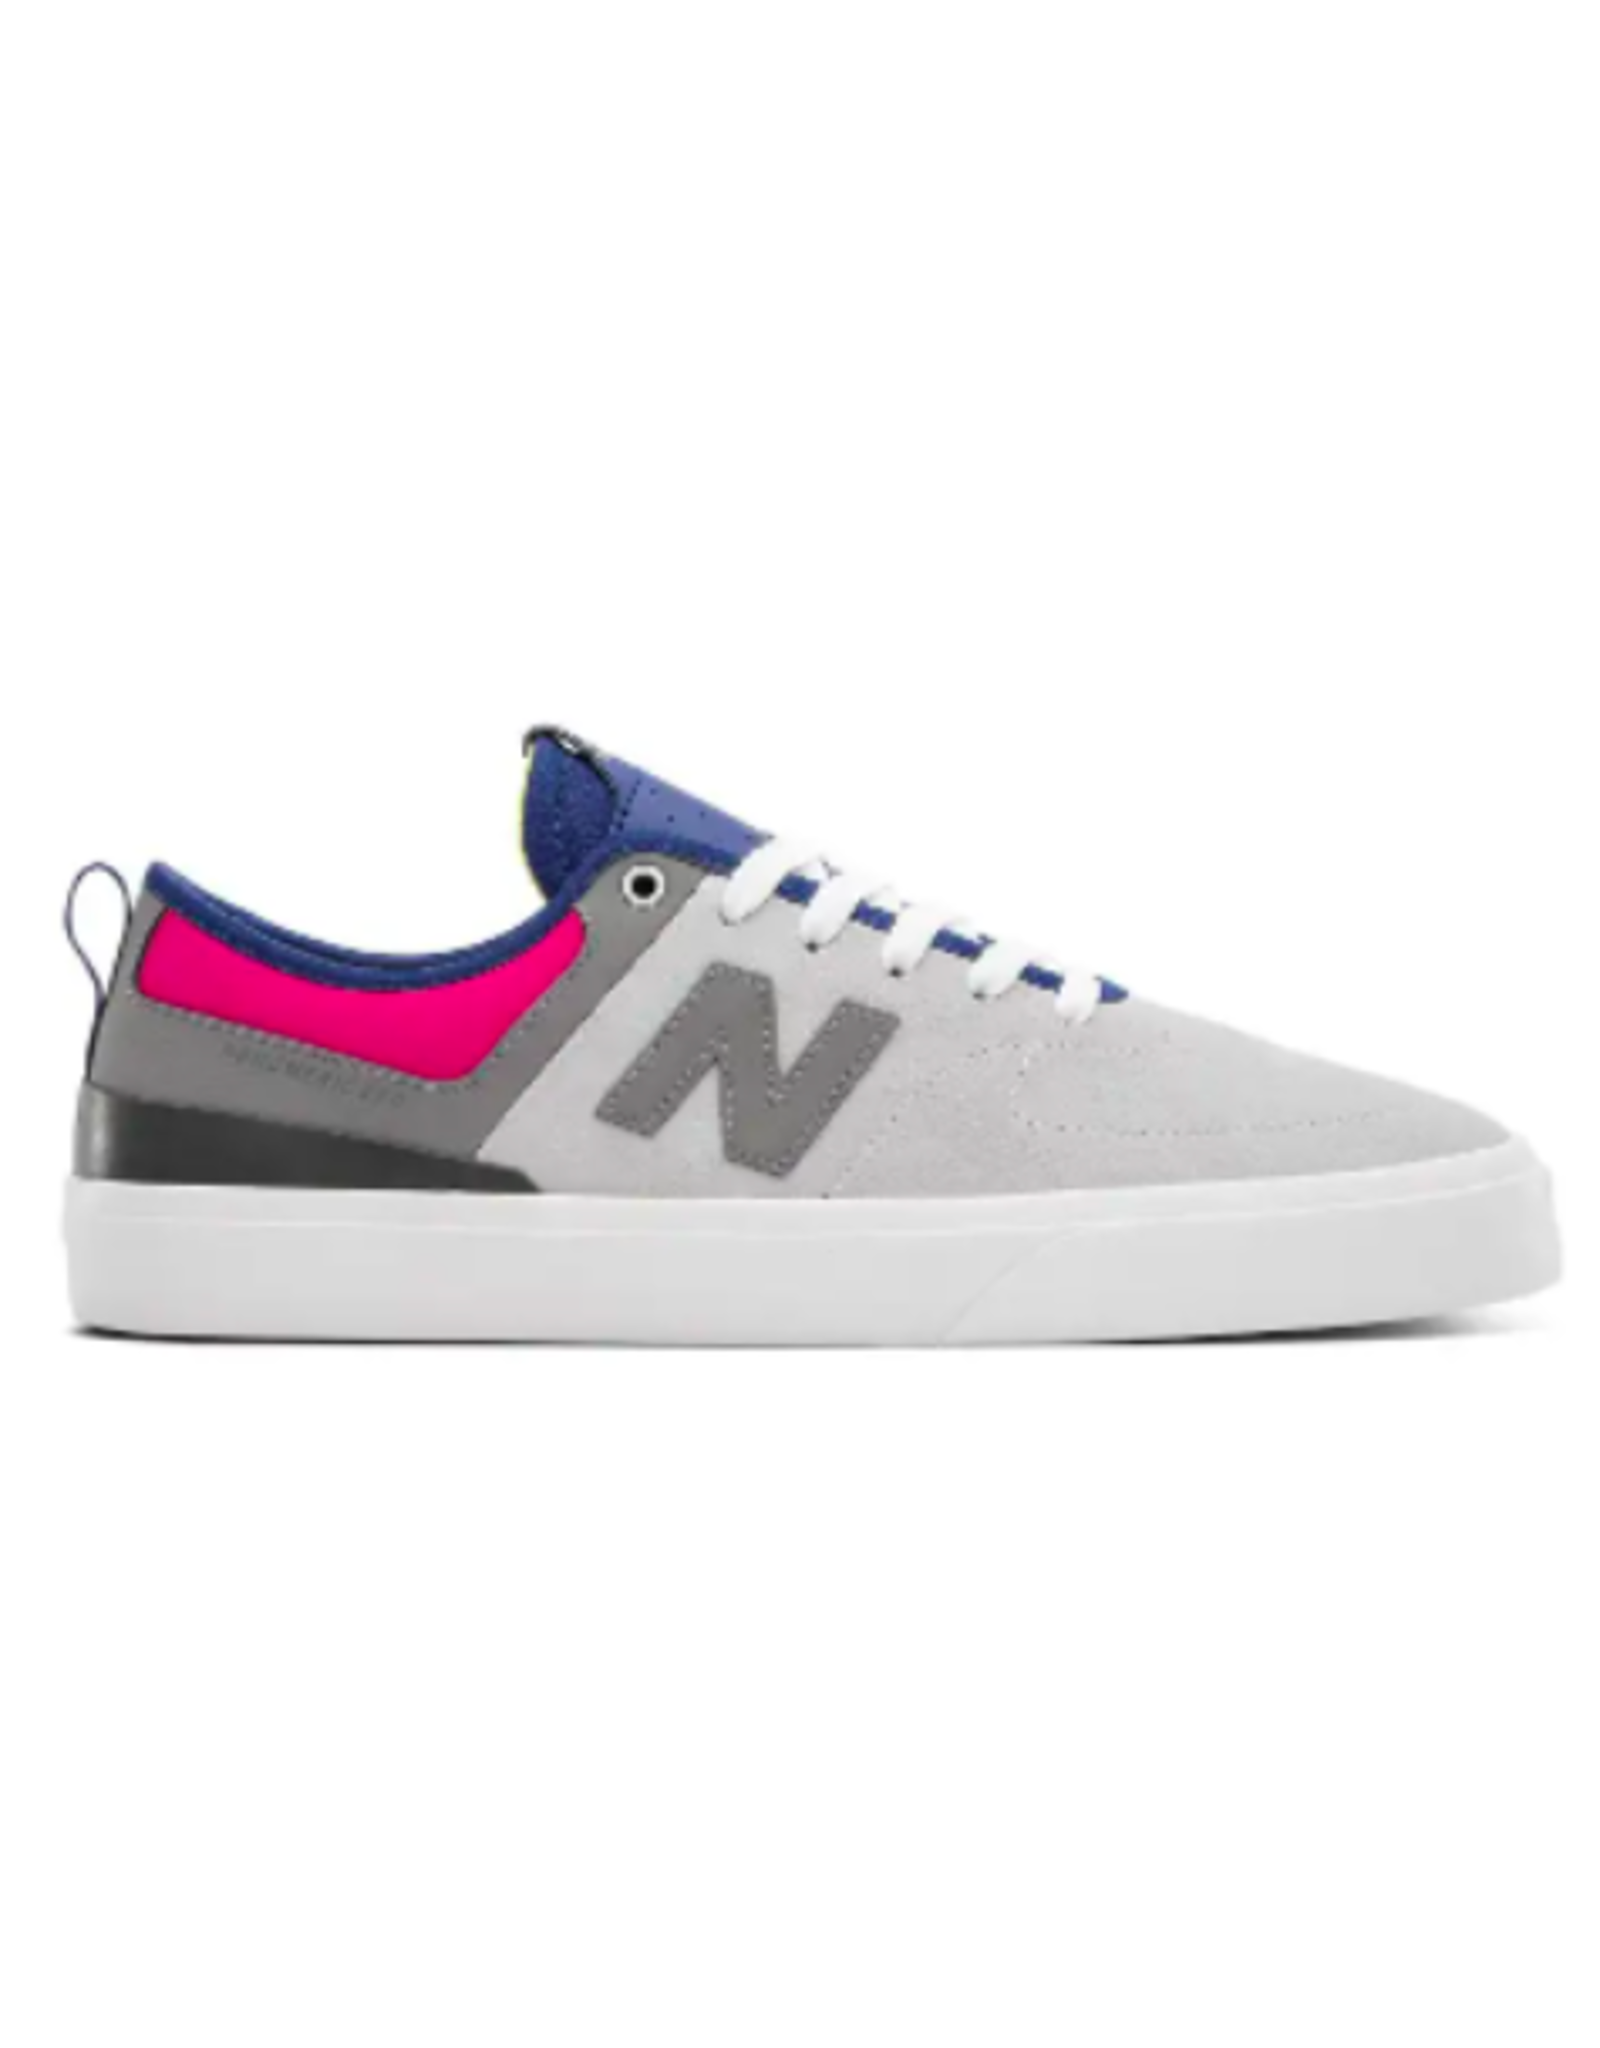 New Balance Men's Numeric 379 Shoes